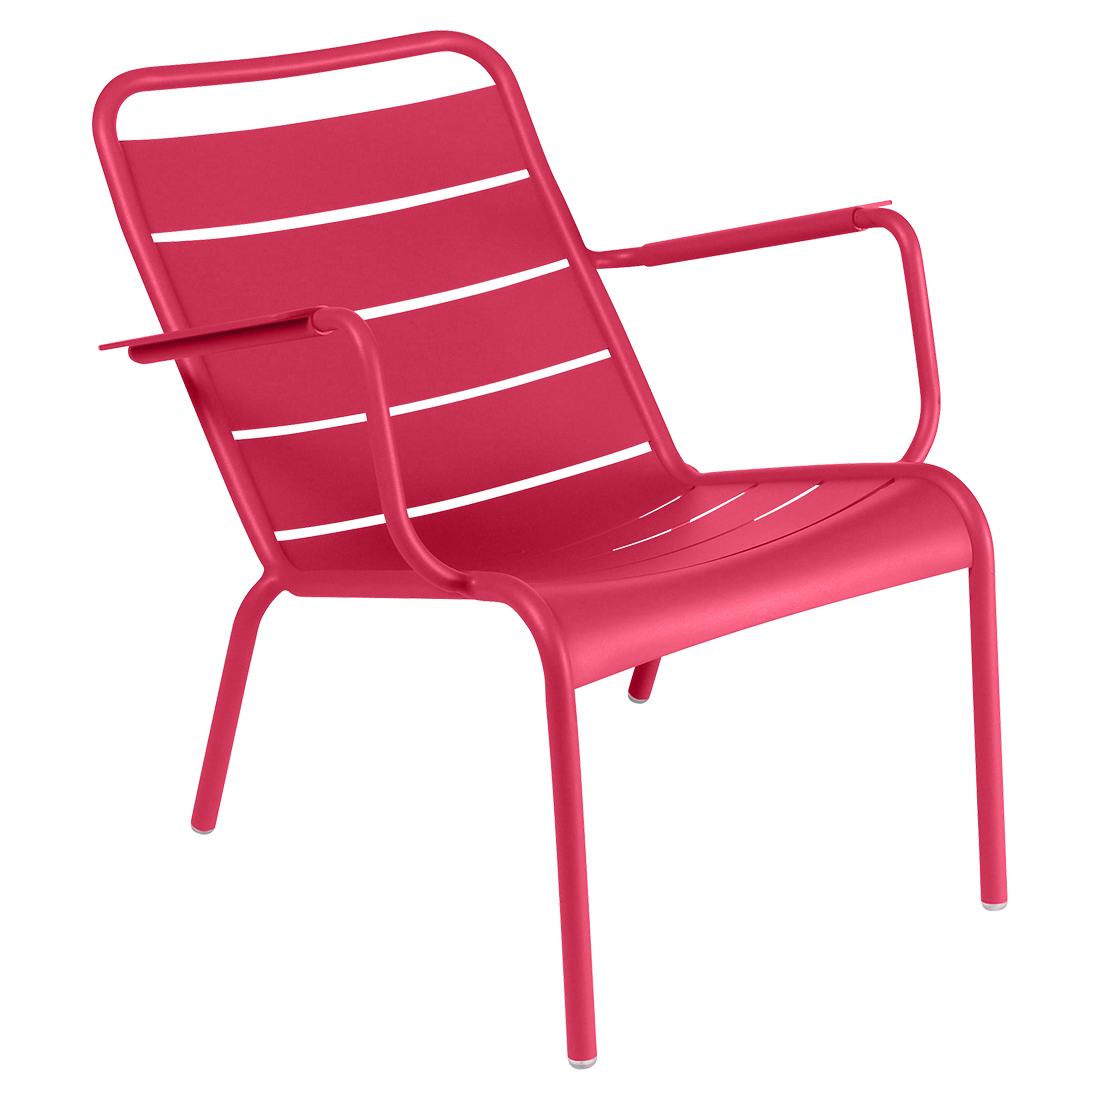 Низкое кресло - LUXEMBOURG - Яркие цвета